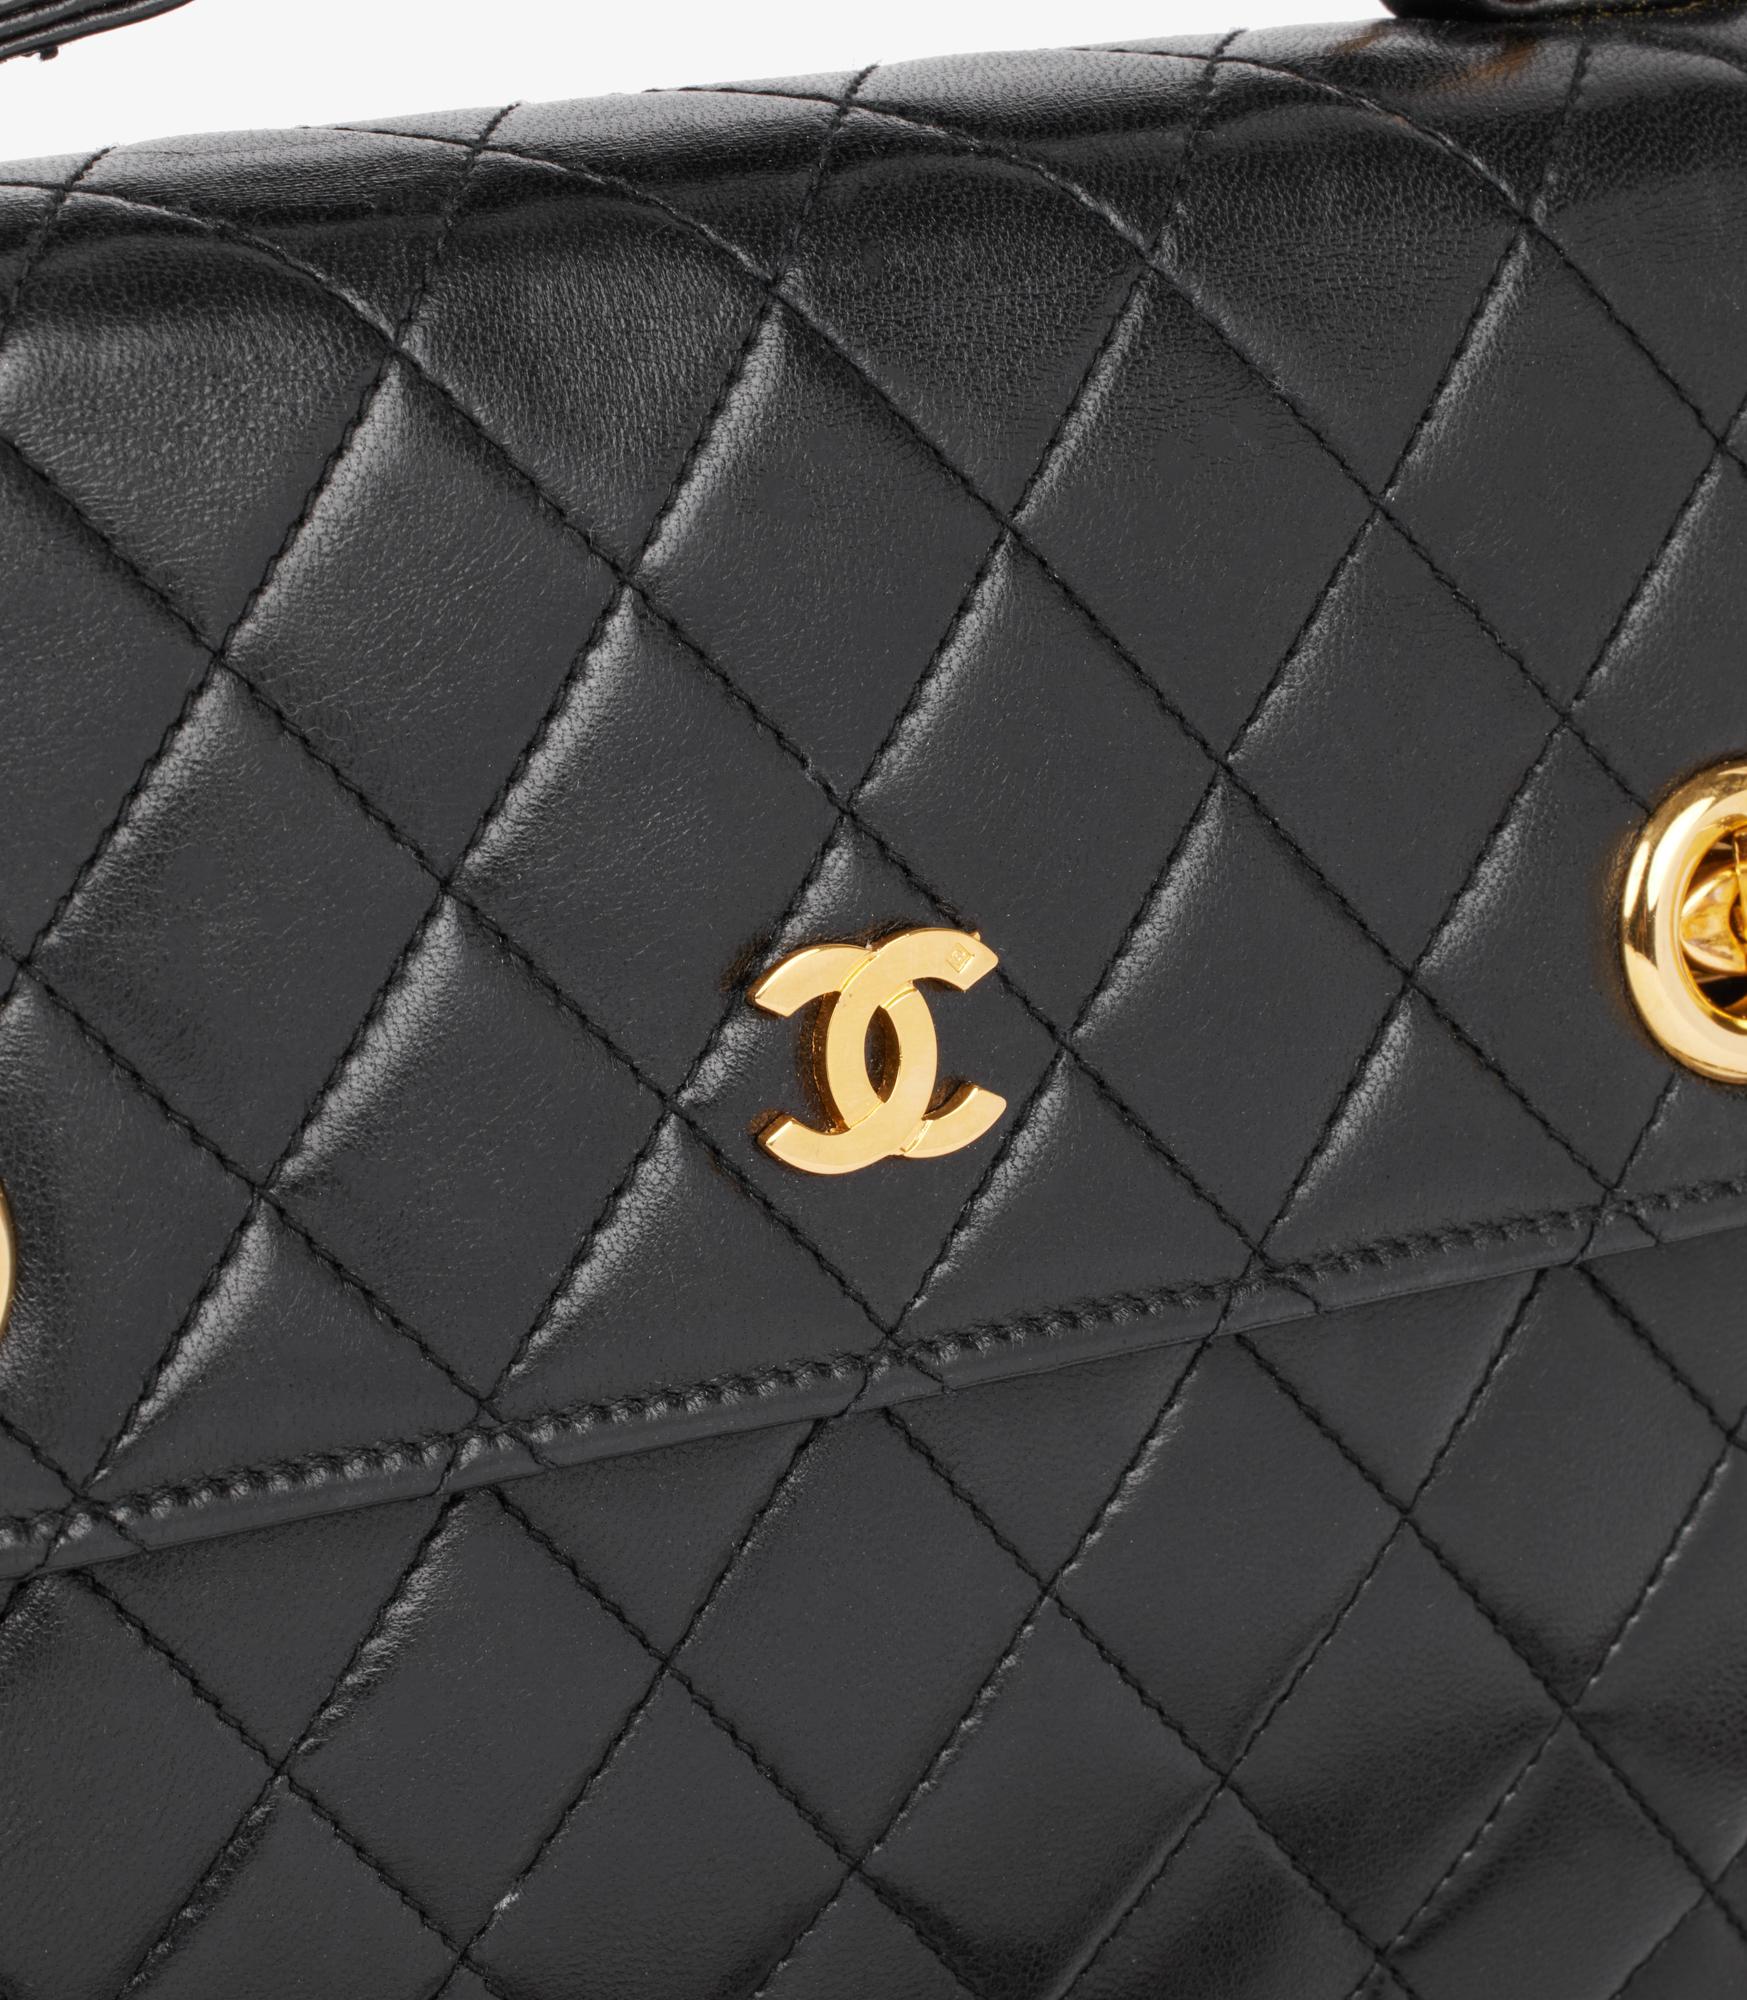 Chanel Black Quilted Lambskin Vintage Small Classic Single Flap Bag With Top Handle

Marque : Chanel
Modèle- Petit sac classique à rabat unique
Type de produit- épaule, poignée supérieure
Numéro de série - 377617
Age- Circa 1988
Accompagné de : sac